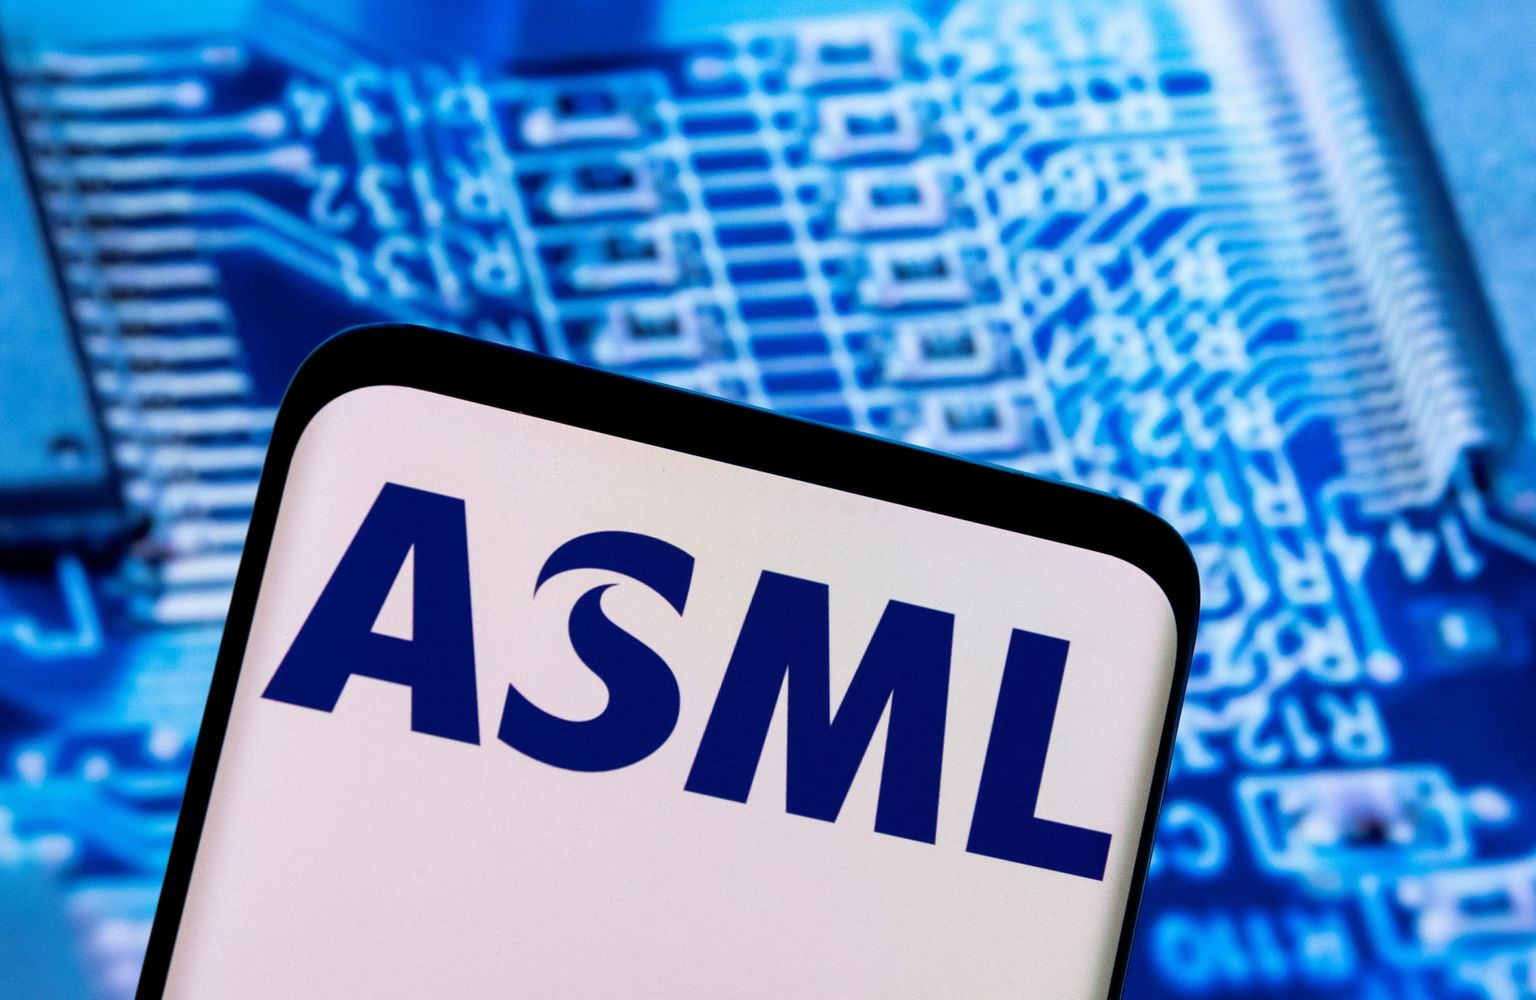 Mikrokiipe tootva ettevõtte ASML logo.